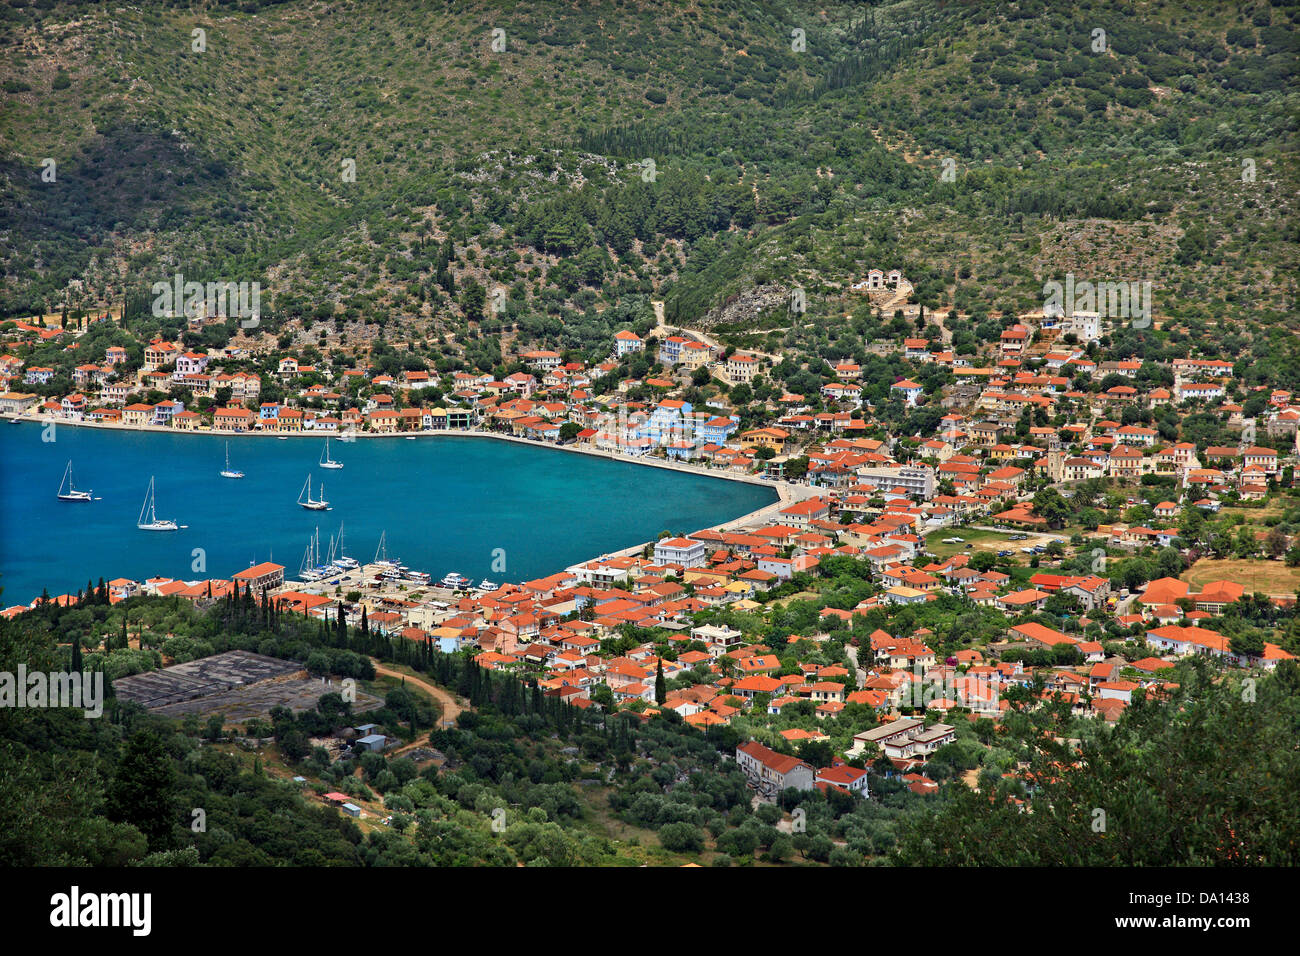 Vista panoramica di Vathi (o 'Vathi'), la "capitale" di Ithaca ("Itaca"), isola, mare Ionio, Eptanisa ('Sanche Isole "), in Grecia. Foto Stock